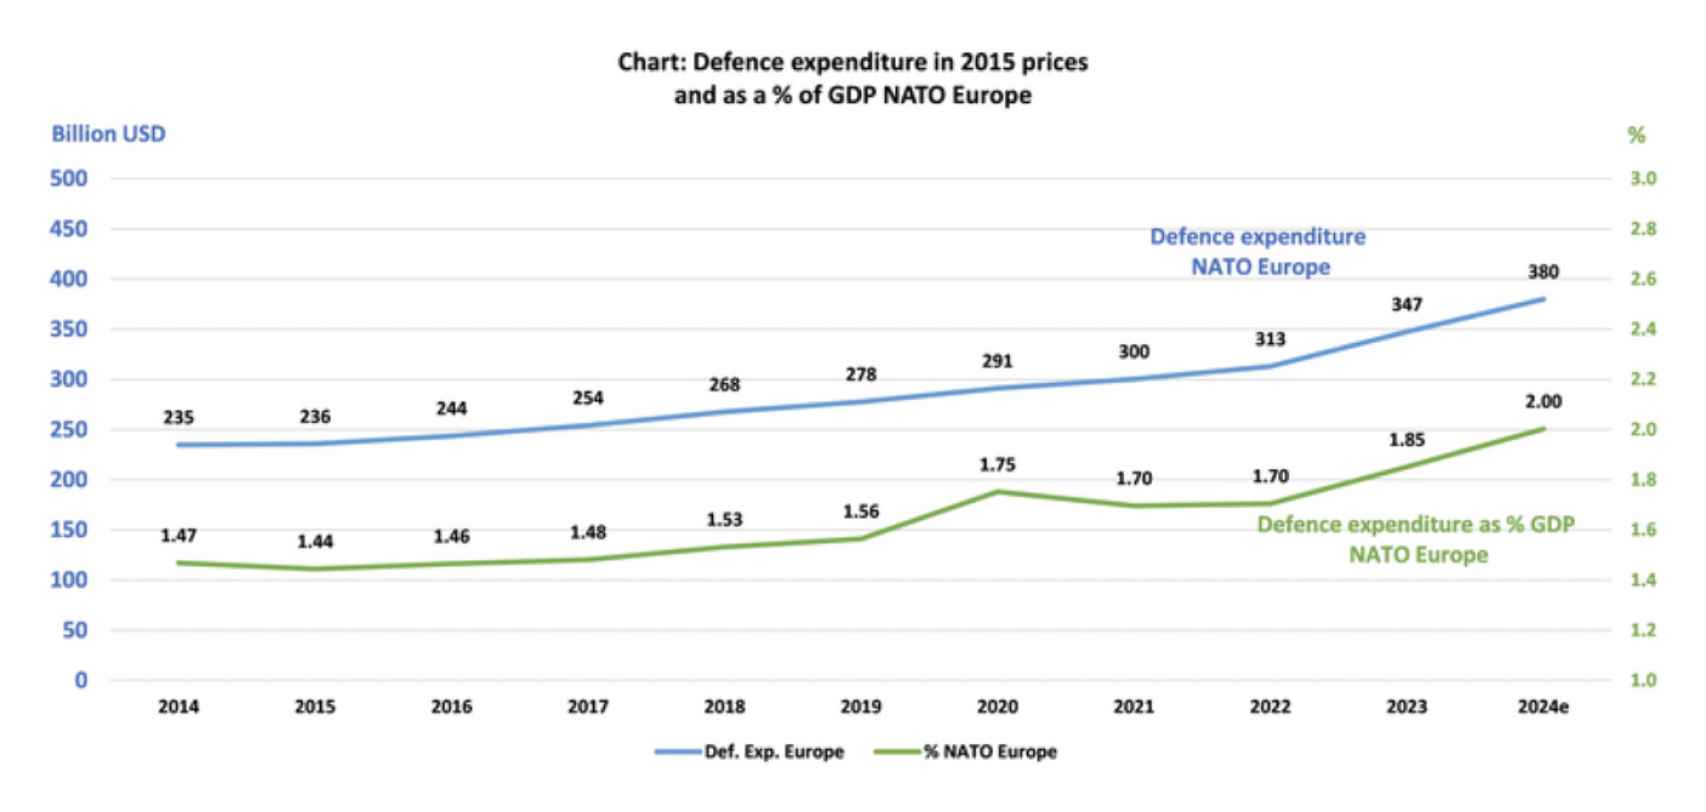 Evolución del gasto en defensa de los países europeos de la OTAN entre 2014 y 2024